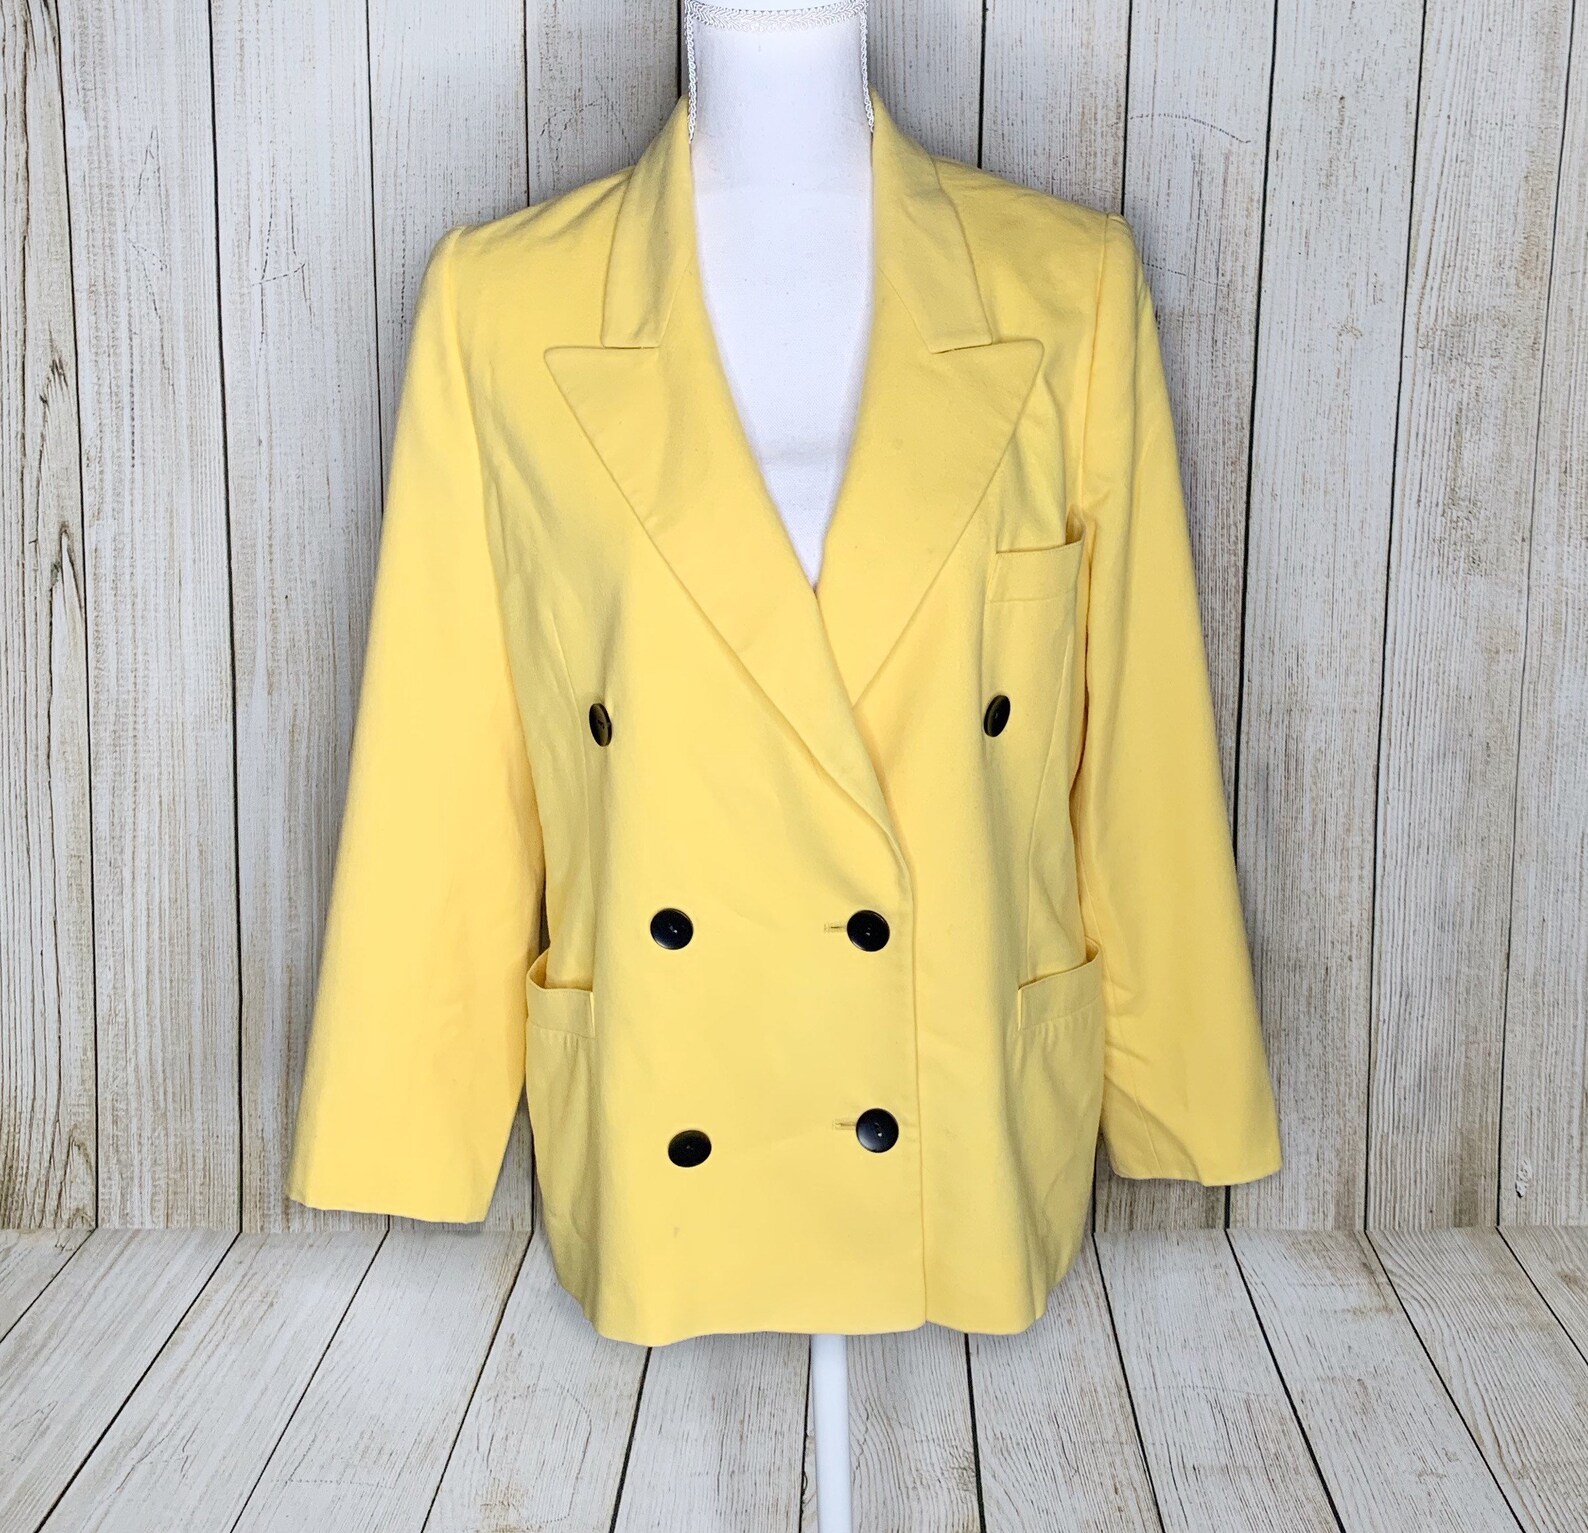 Vintage Margaretha Ley Escada Yellow Wool and Cashmere Blazer | Etsy